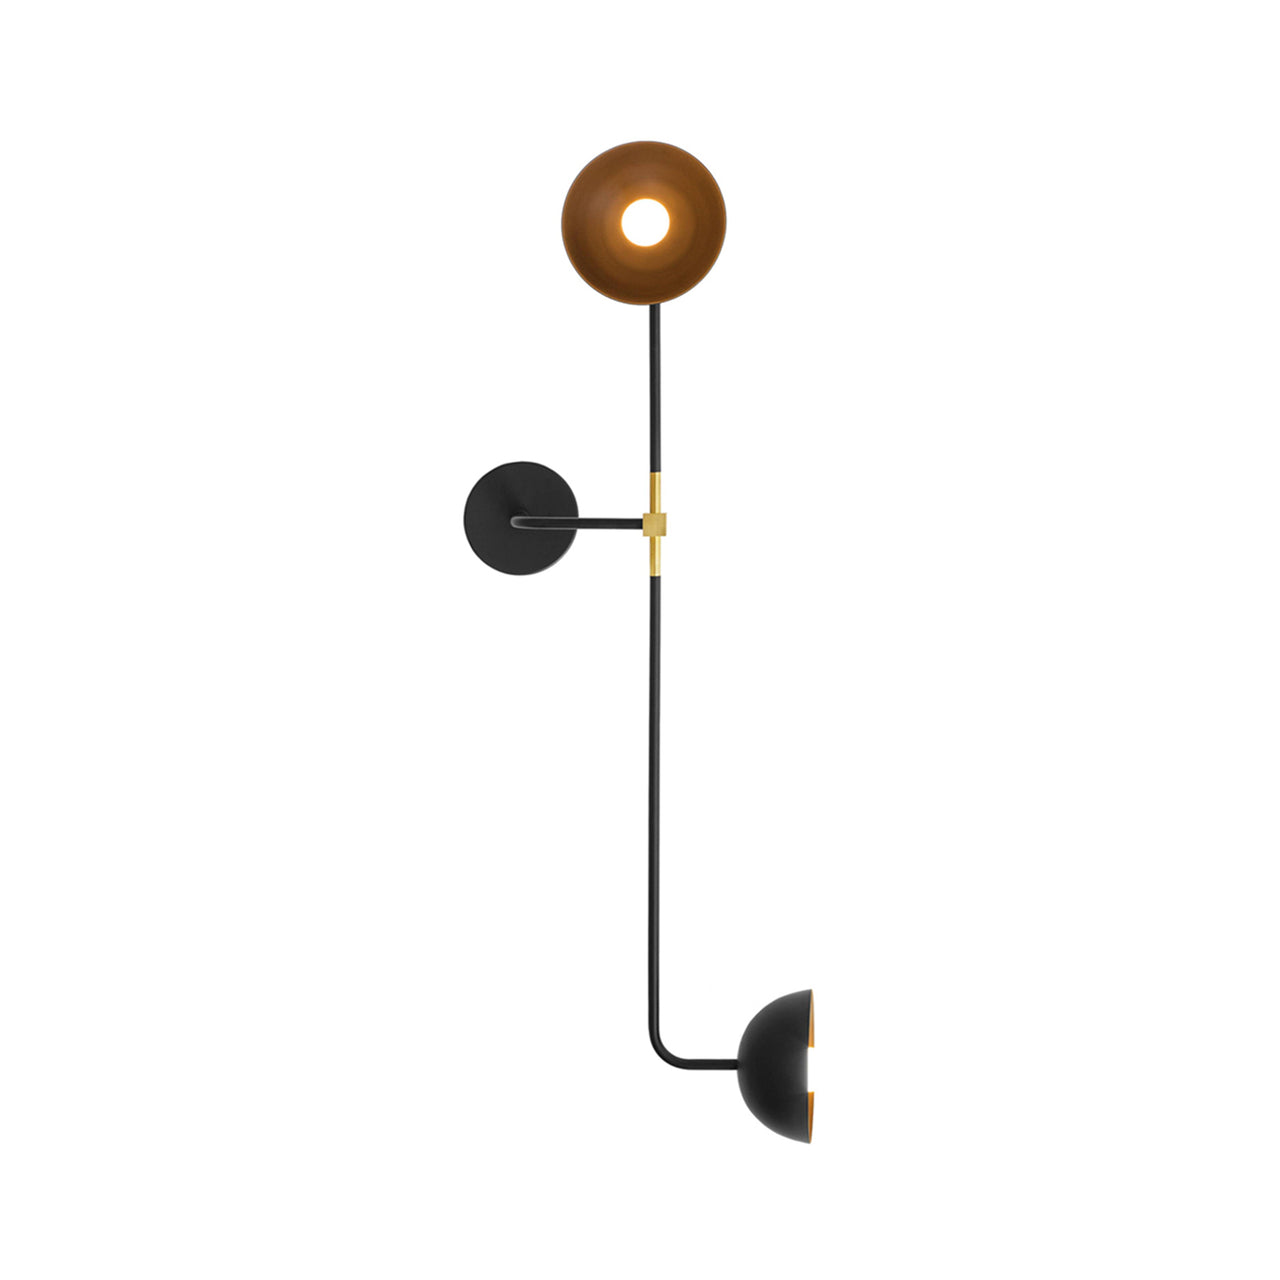 Beaubien Wall Double Shade Lamp: Brass + Standard